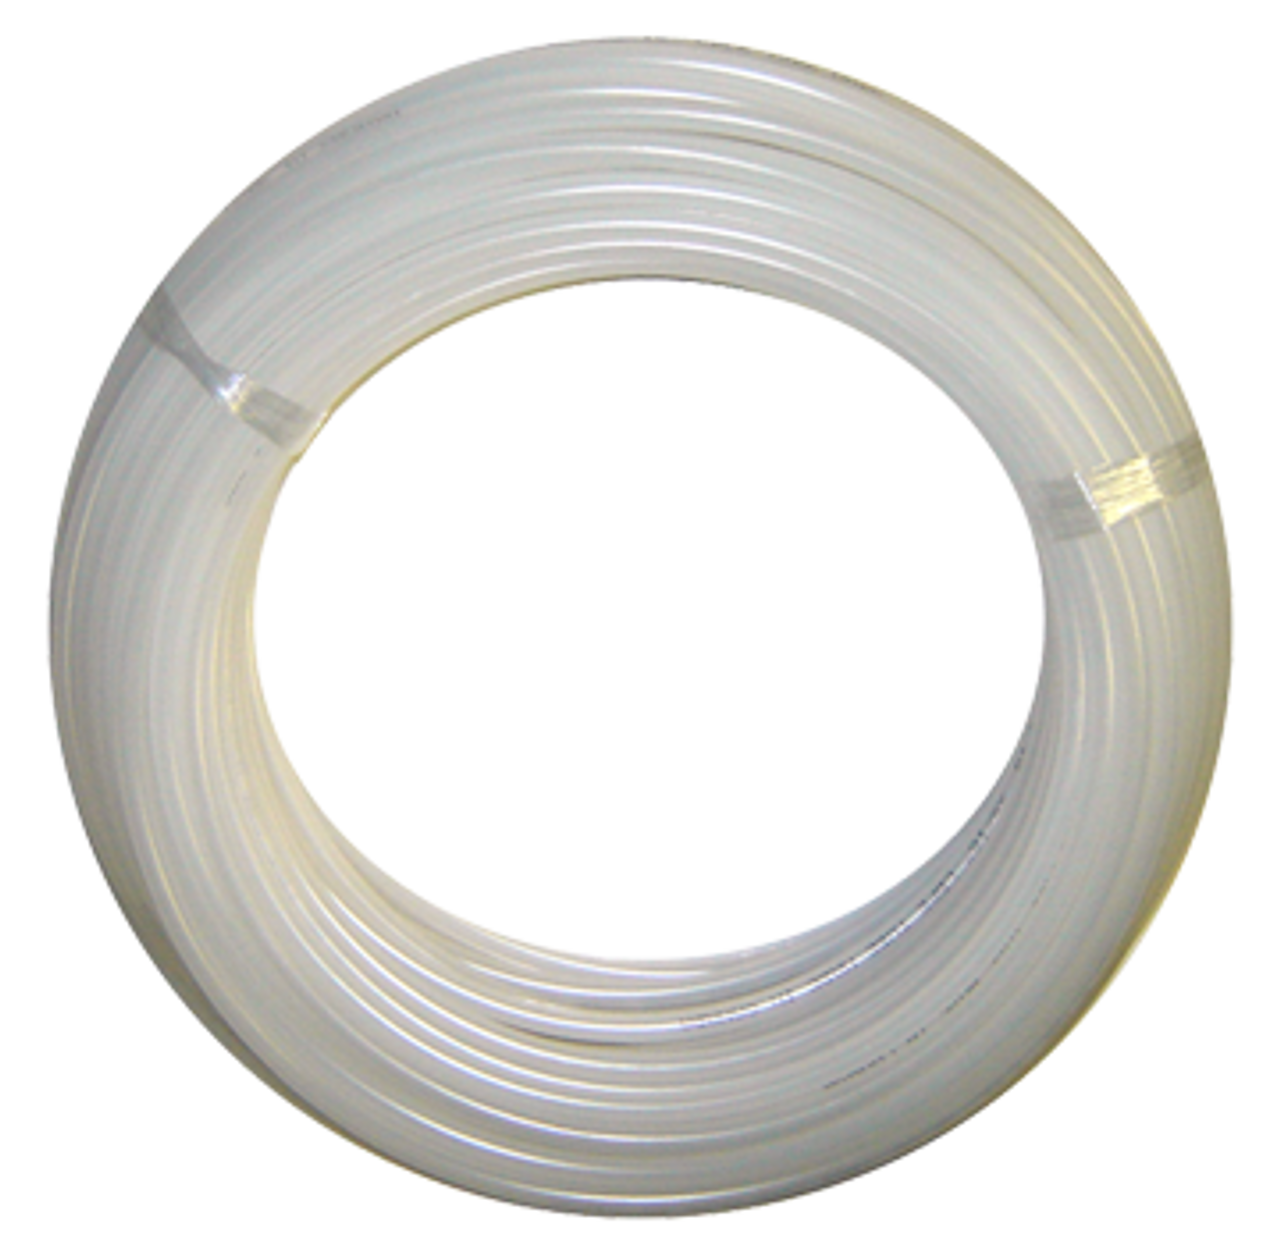 1/4" x 100' High Density White Polyethylene Tube  359-4-100